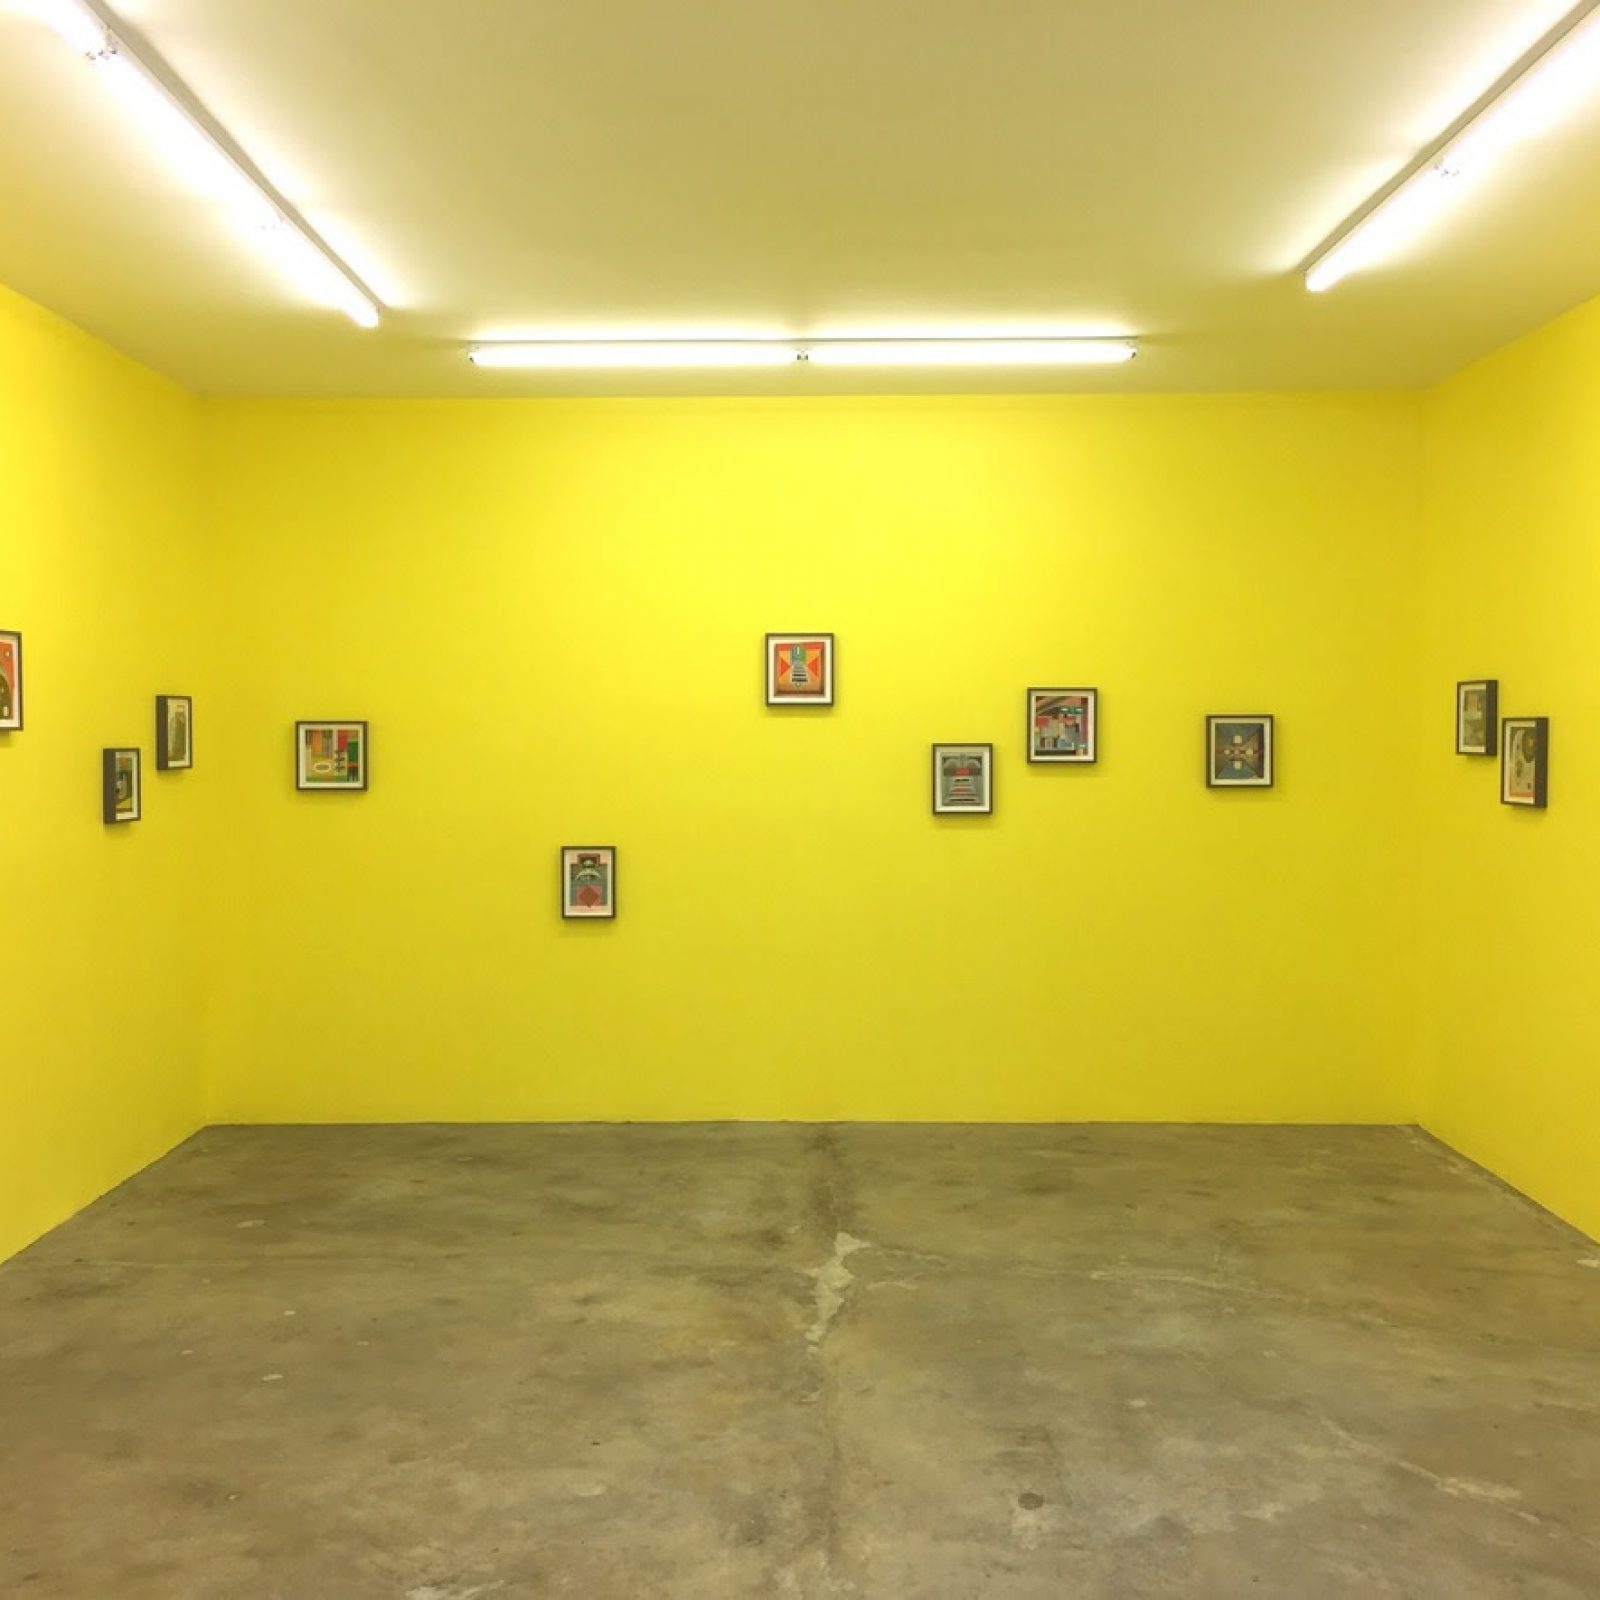 Vista de la exposición "Fantasías", de Elisabeth Wild, en Ruberta, Glendale, California, 2017. Cortesía: Ruberta